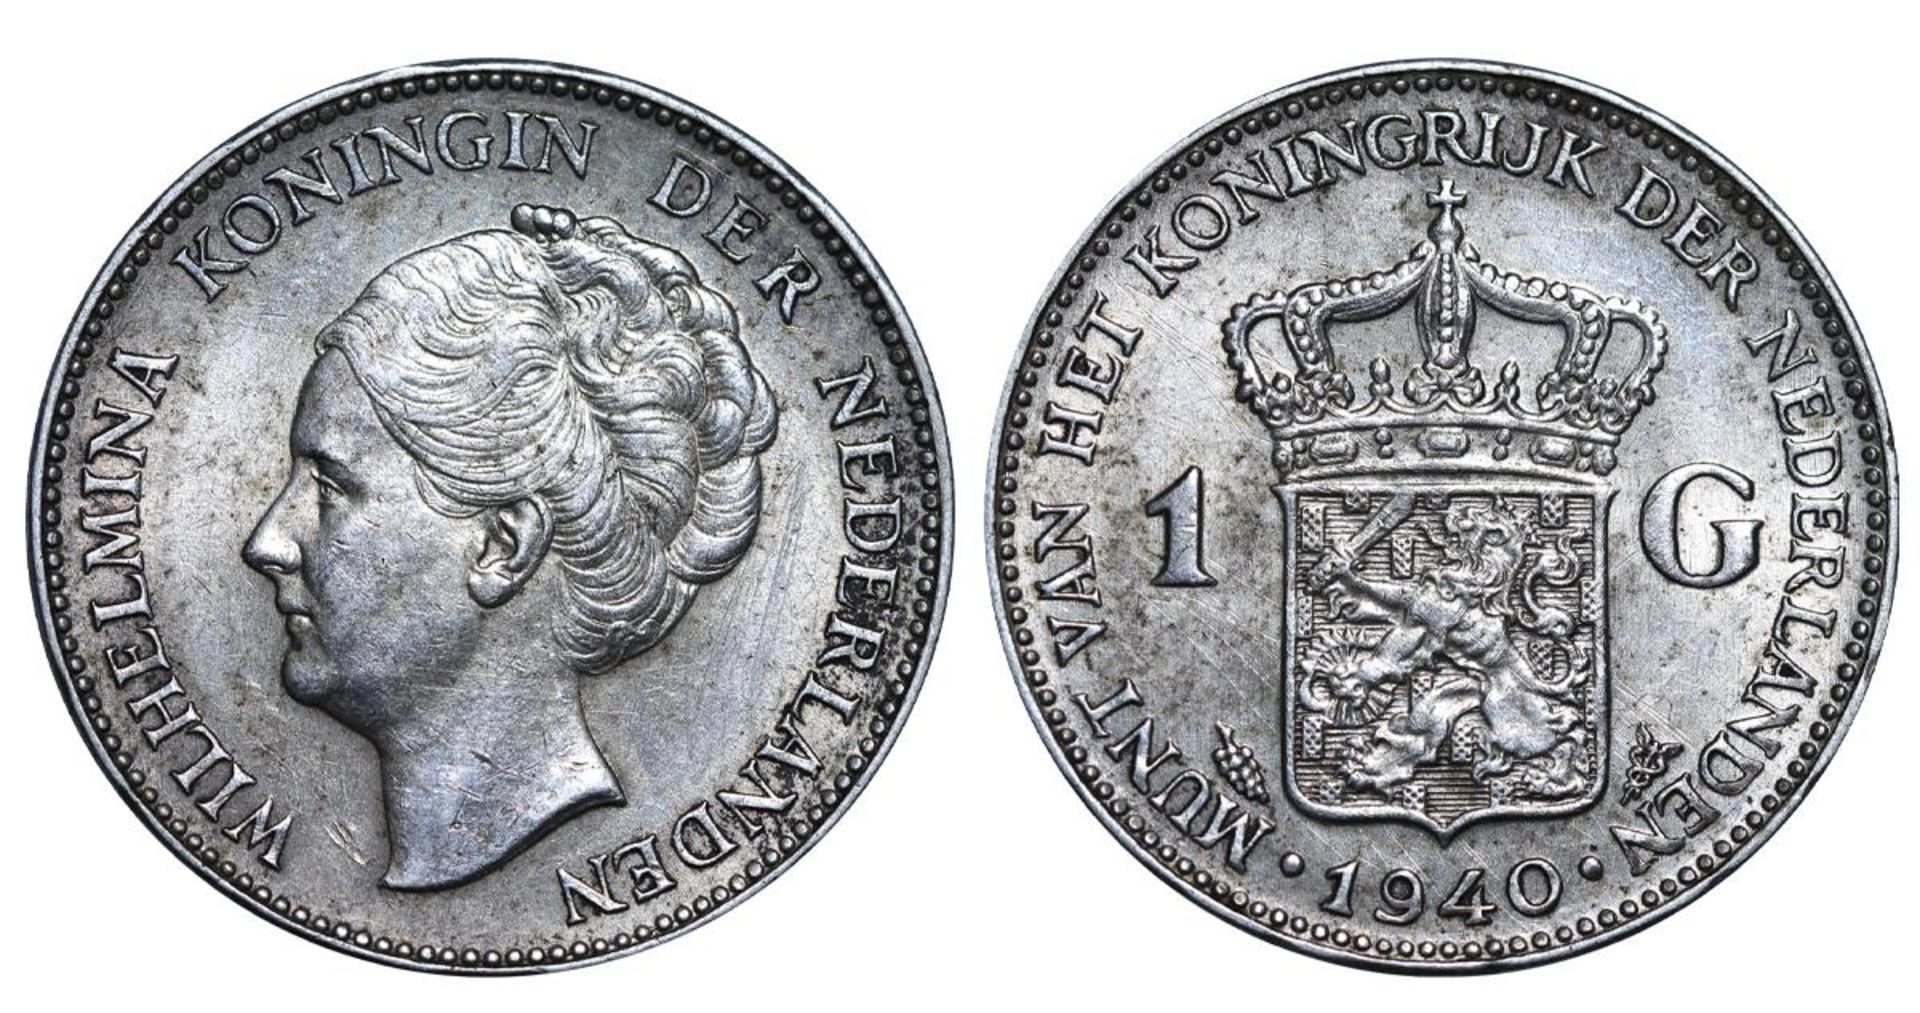 Netherlands, 1 Gulden, 1940 year